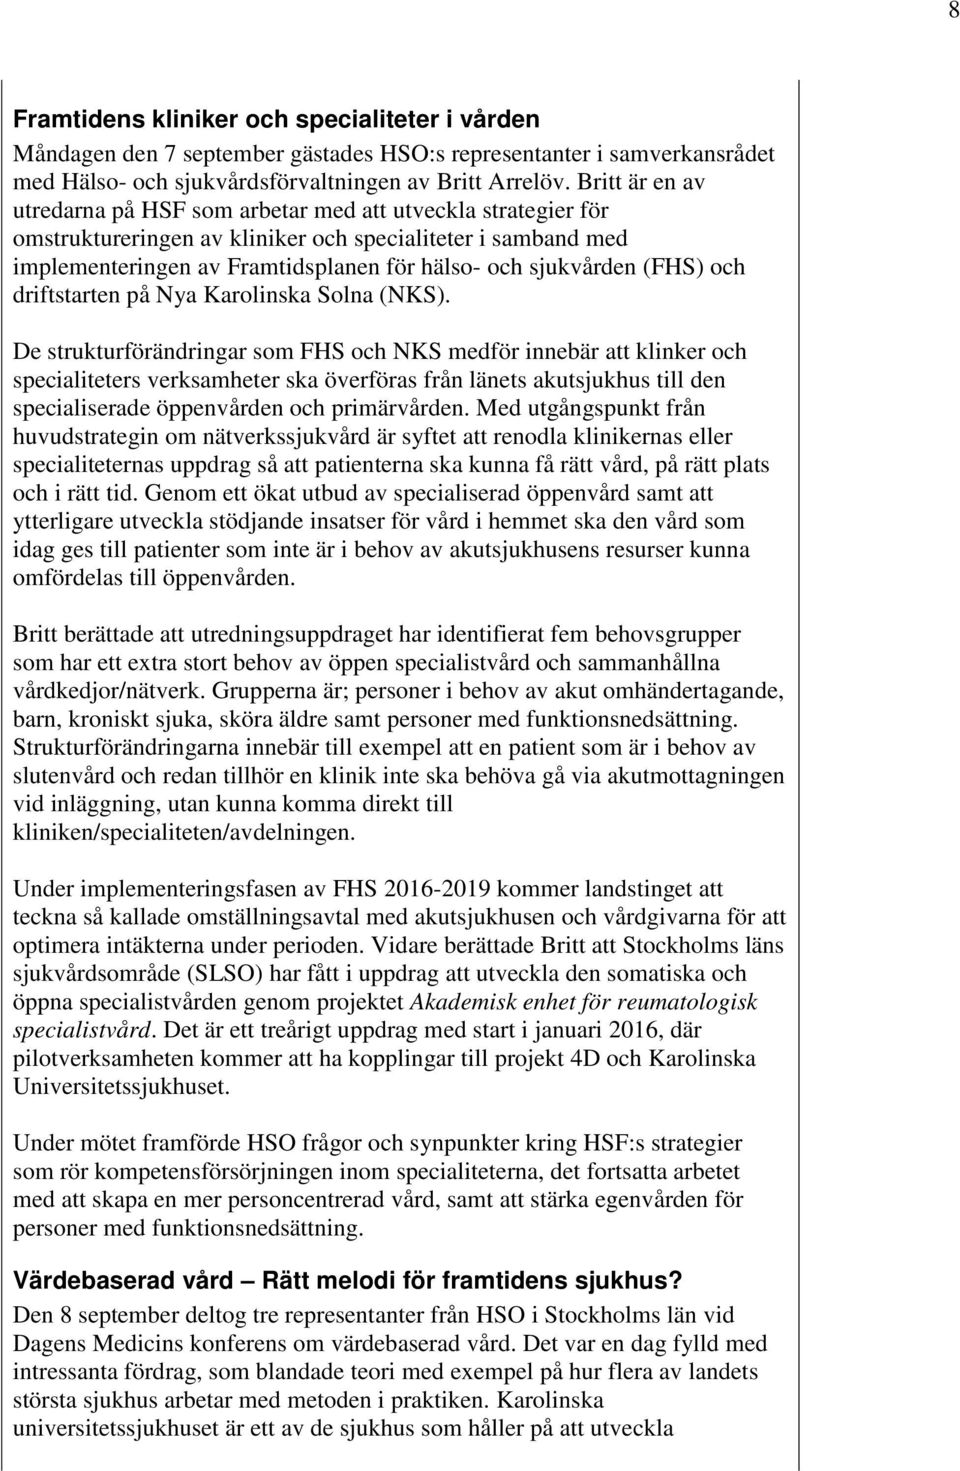 (FHS) och driftstarten på Nya Karolinska Solna (NKS).